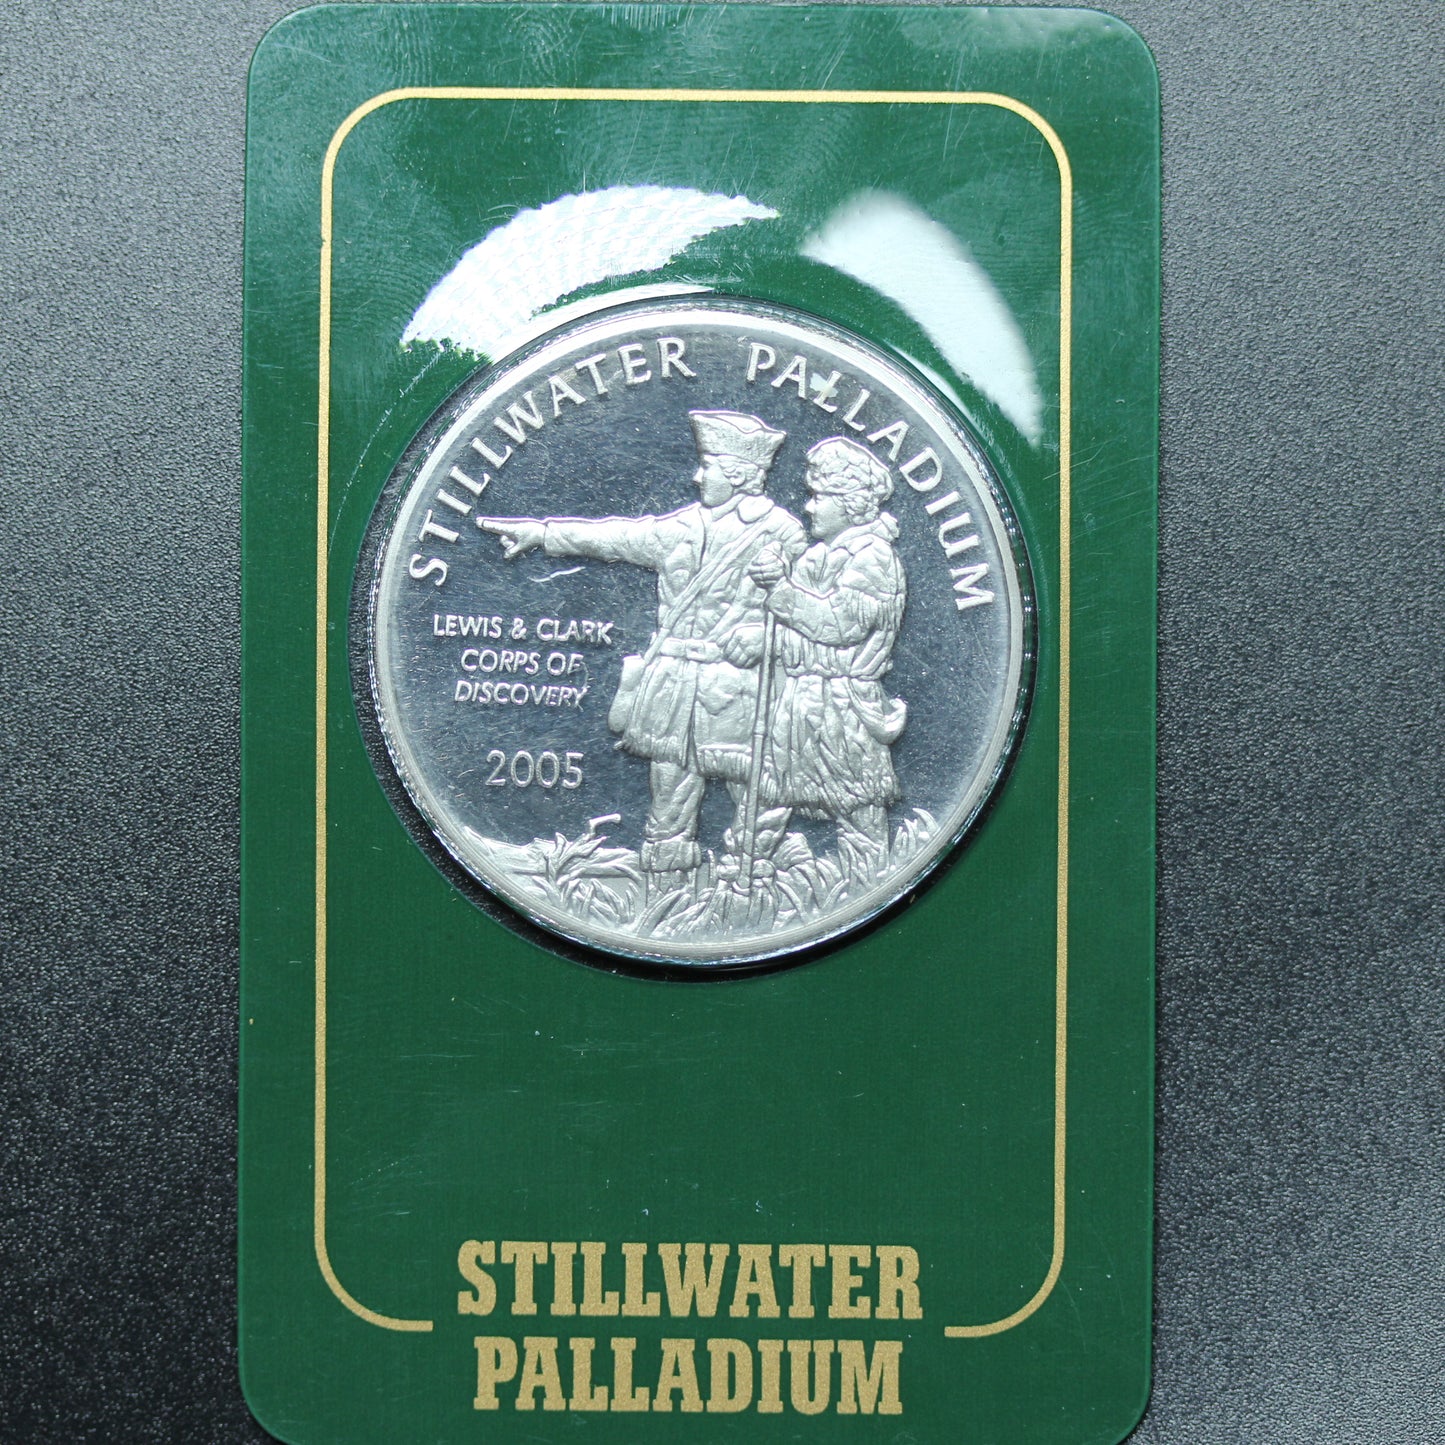 2005 1 oz Stillwater Palladium Buffalo Lewis & Clark Round by Johnson Matthey in Assay